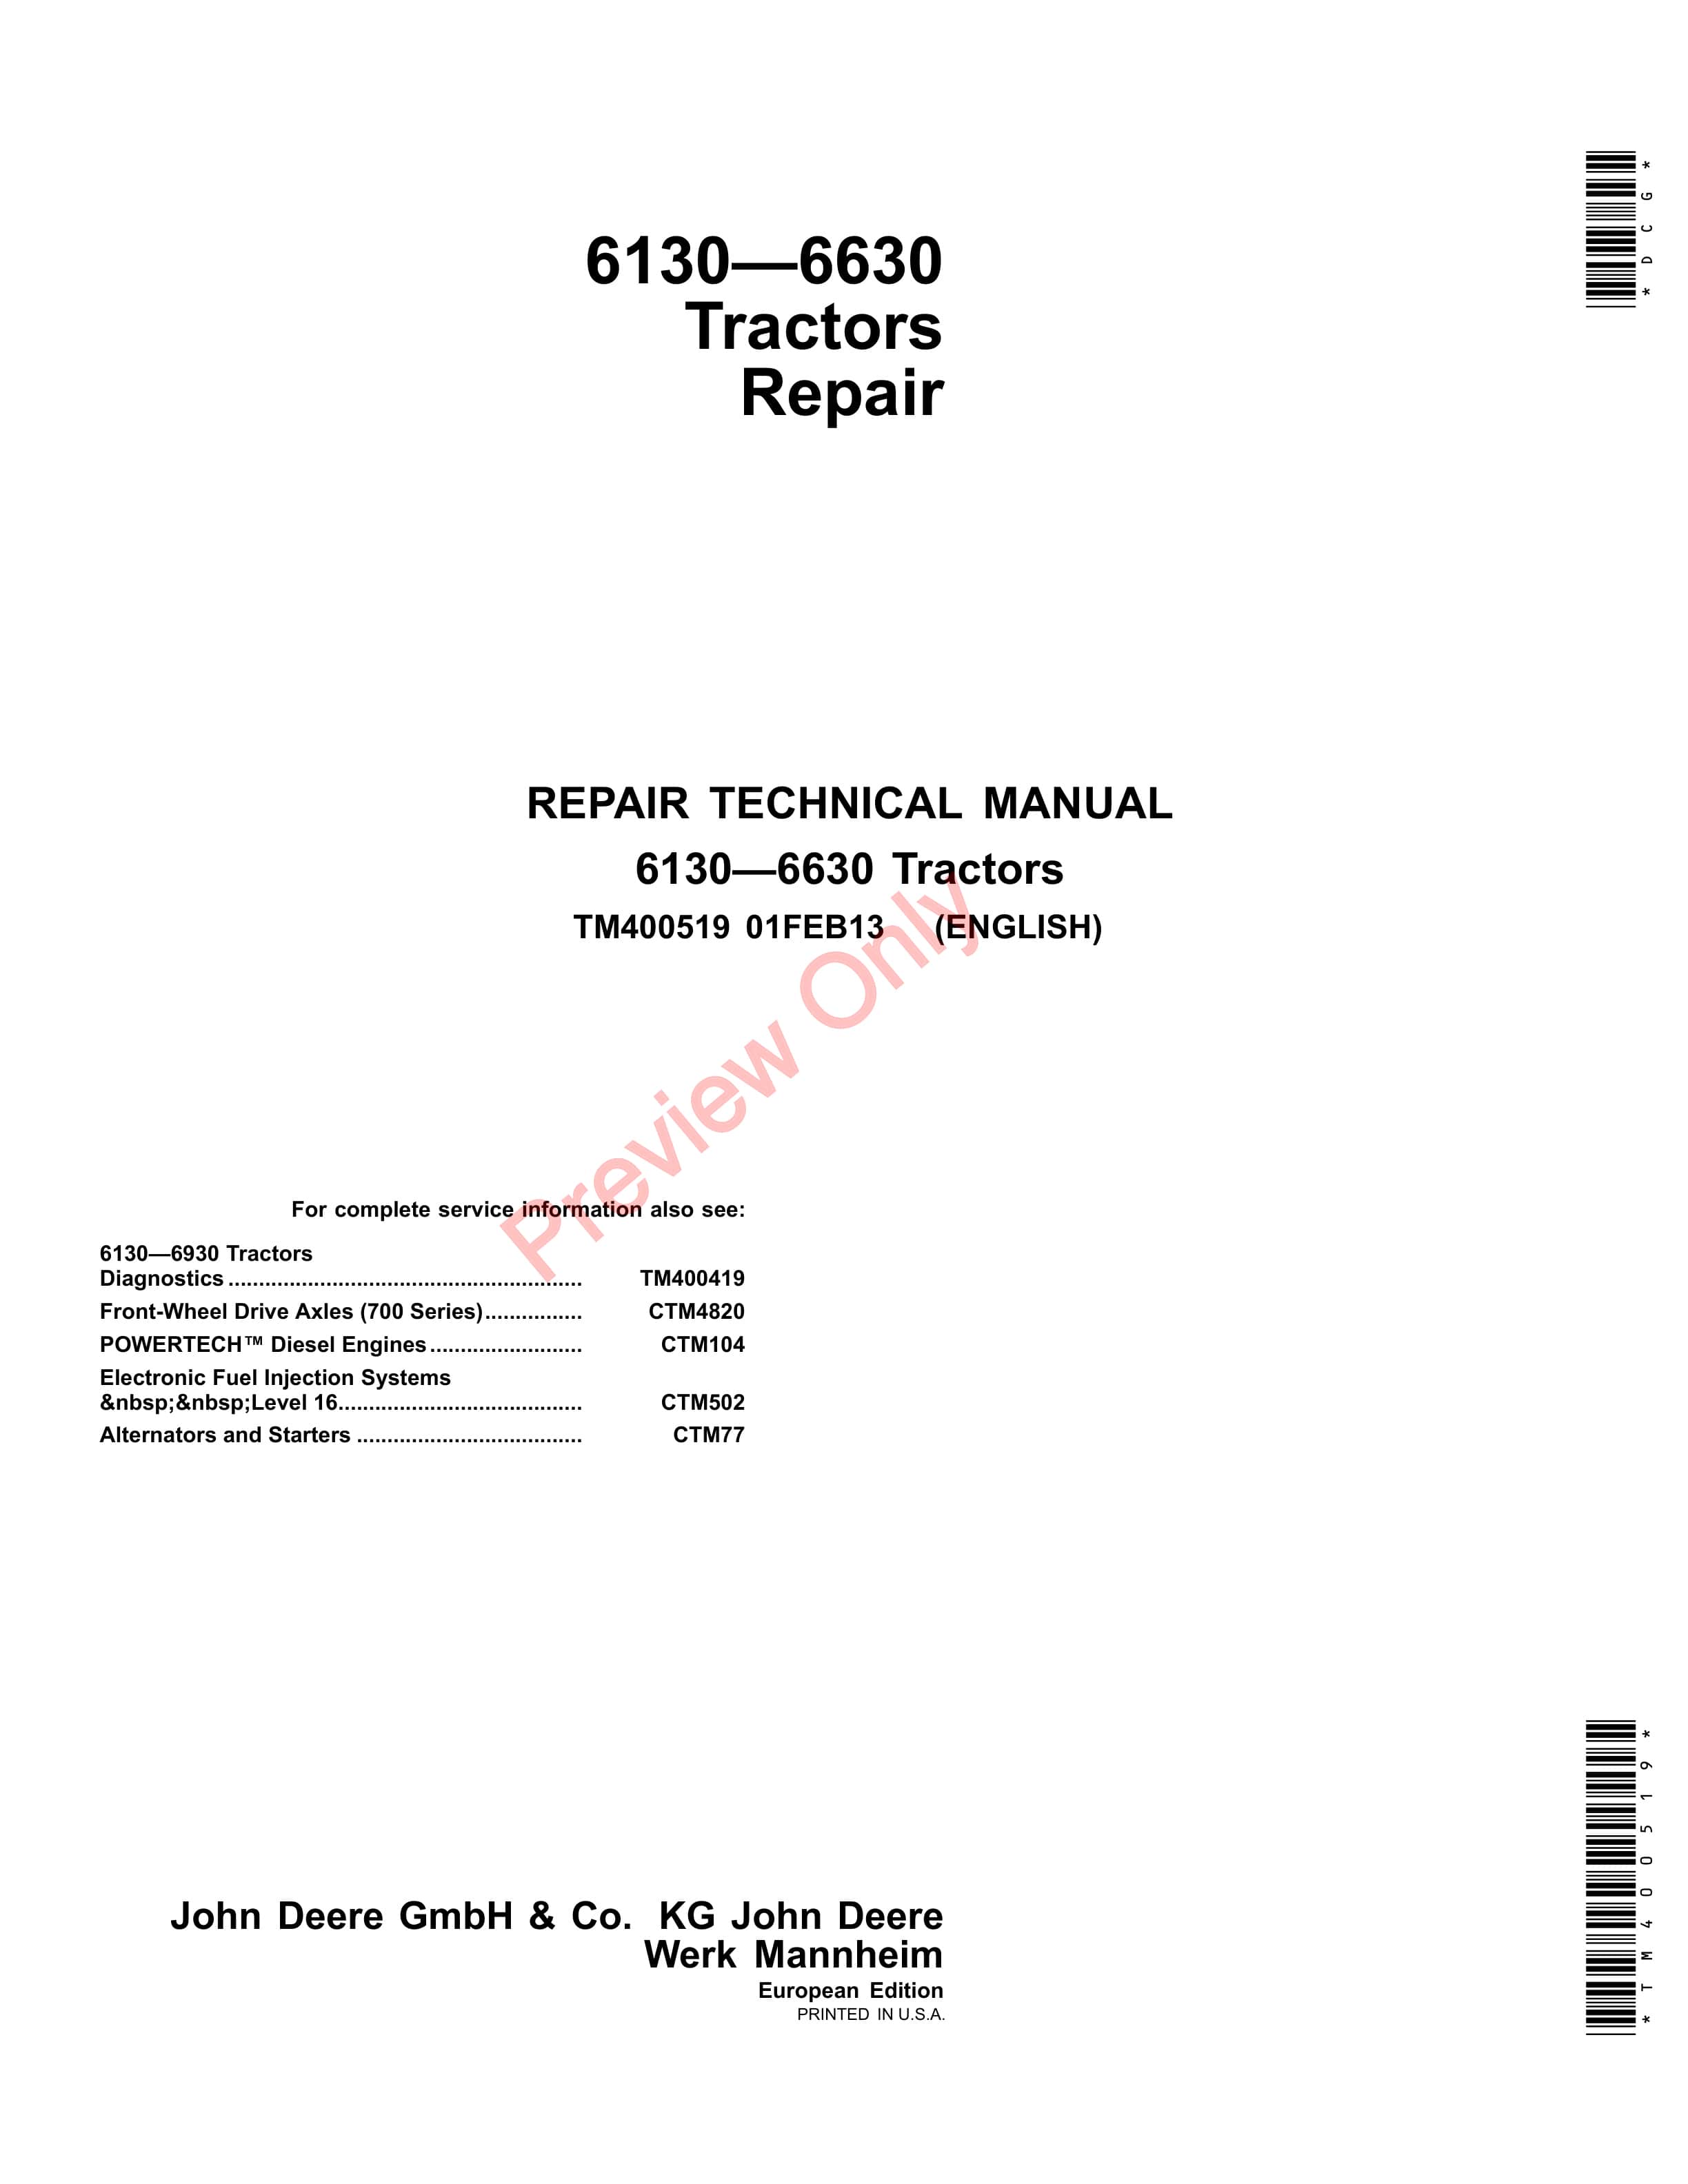 John Deere 6130 6230 6330 6430 6530 6534 and 6630 Tractors Repair Technical Manual TM400519 01FEB13 1